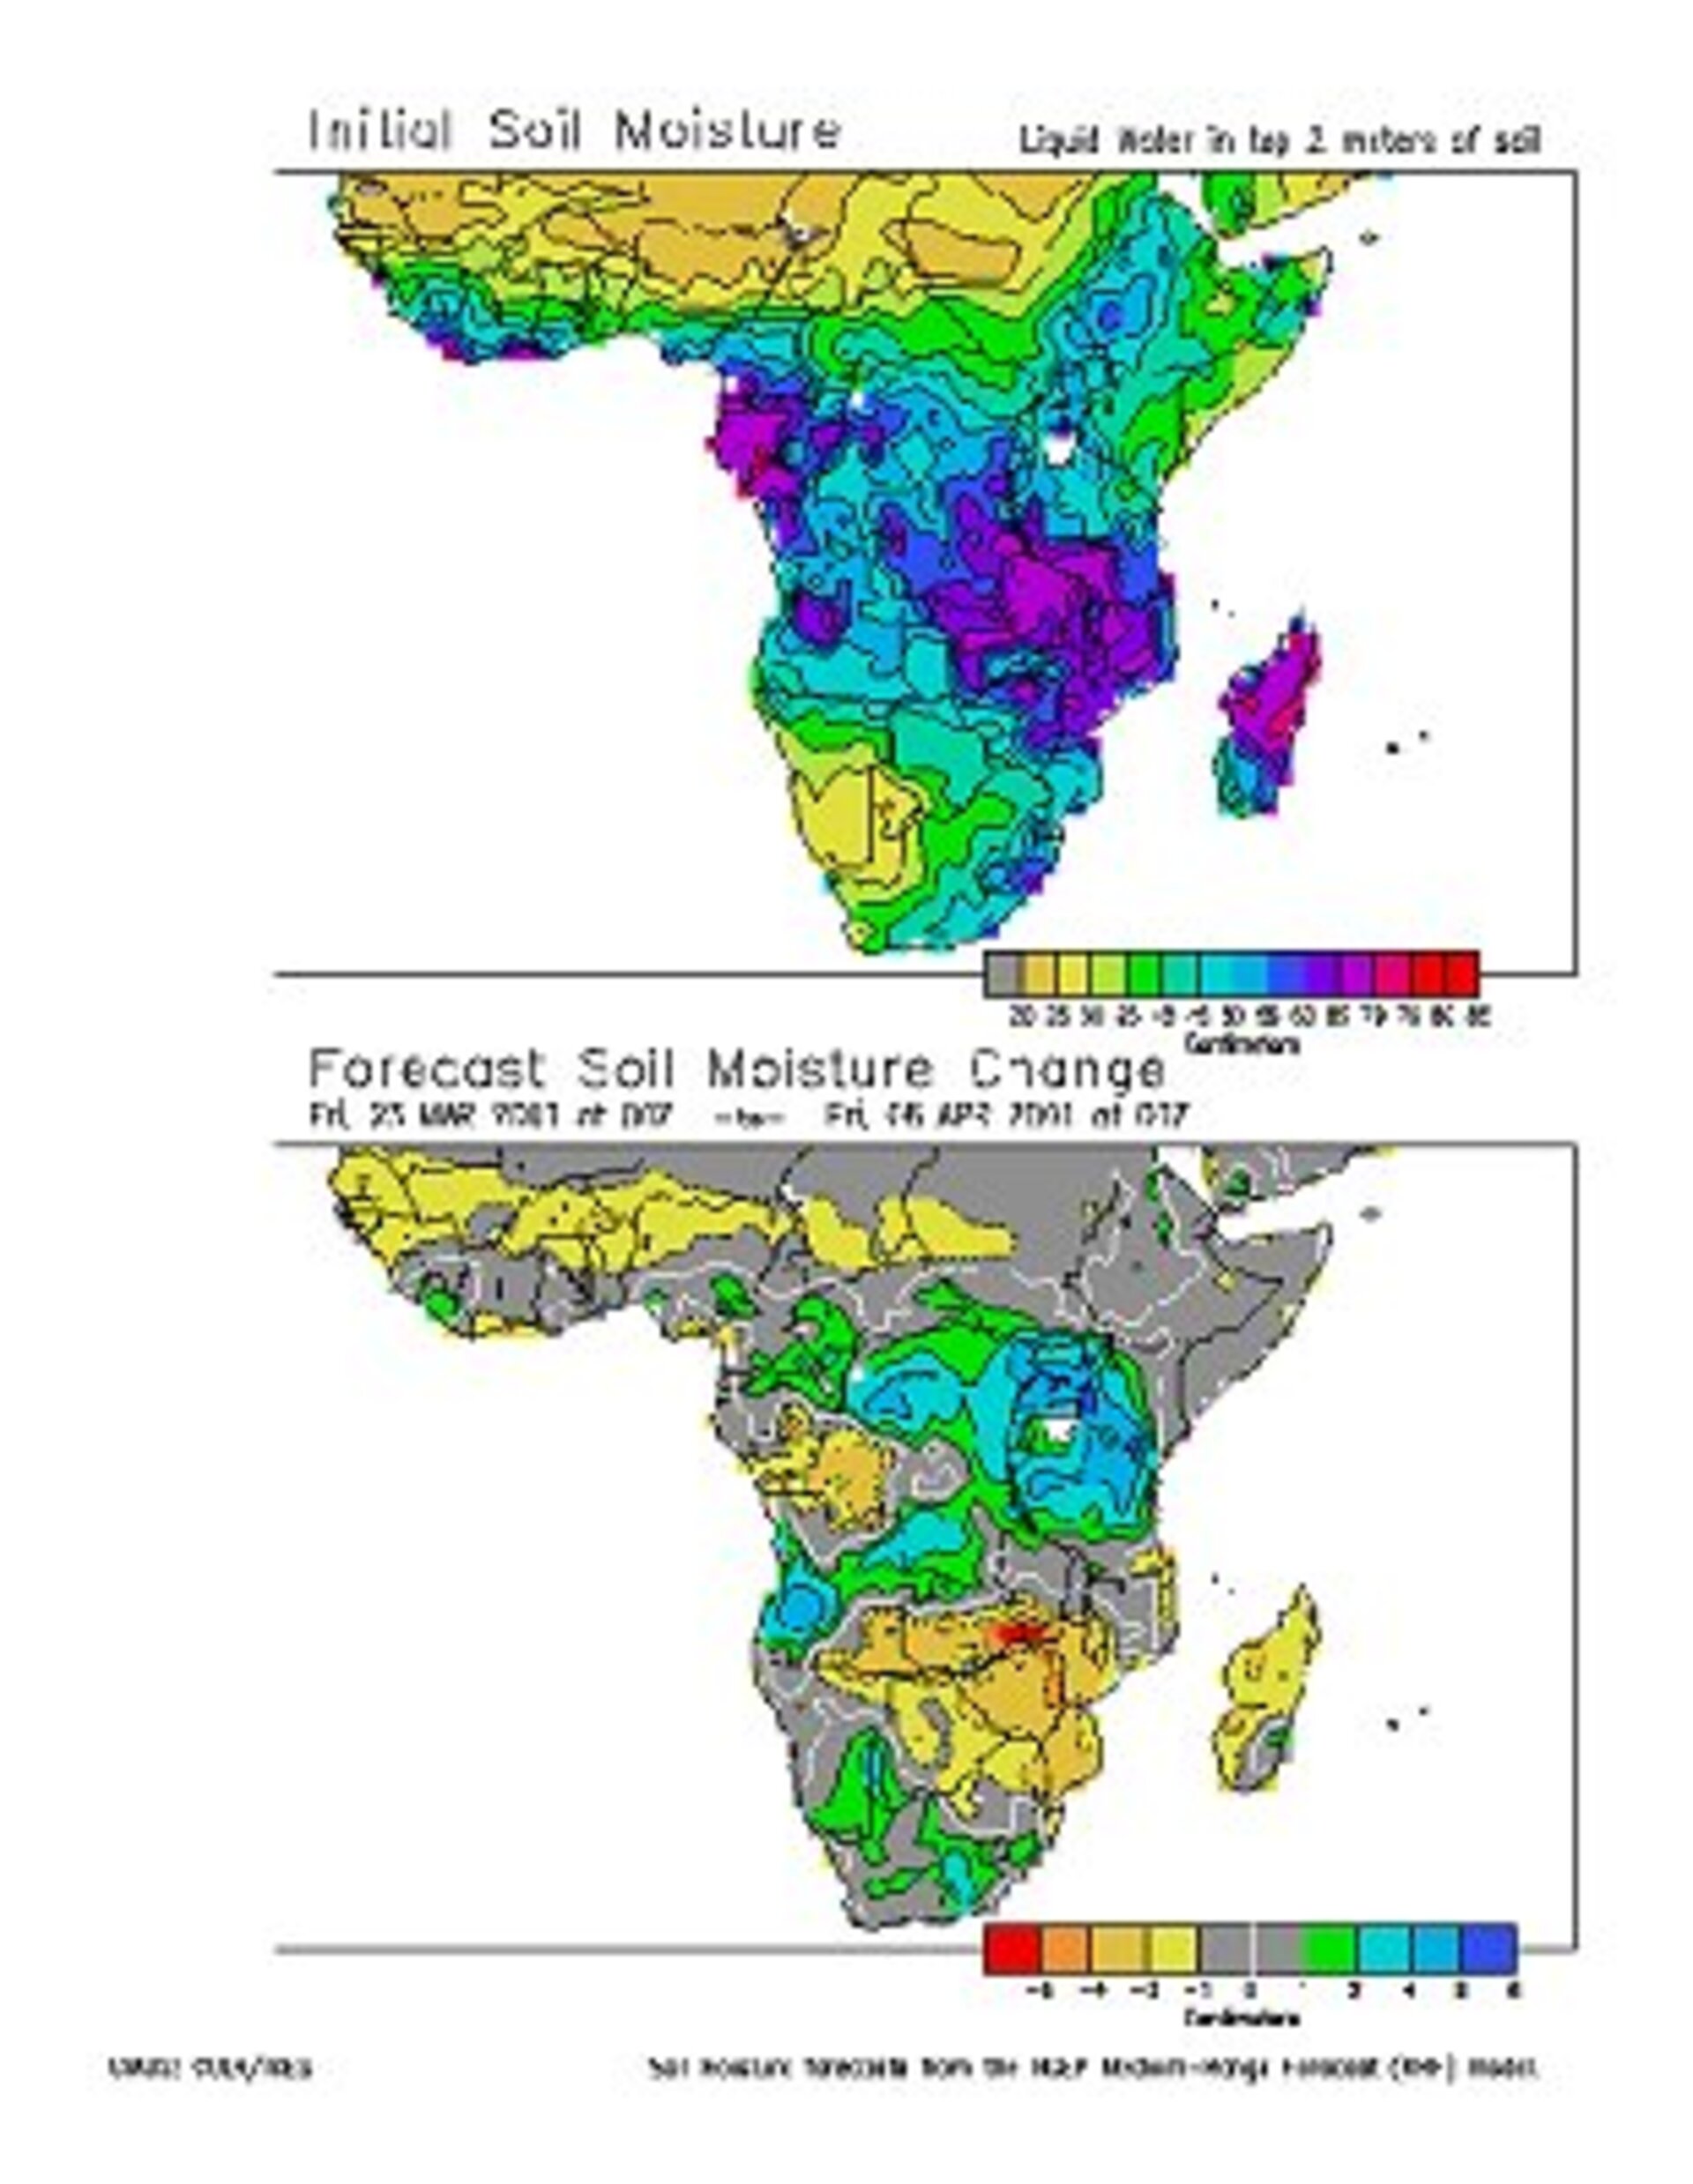 Forecast of soil moisture change